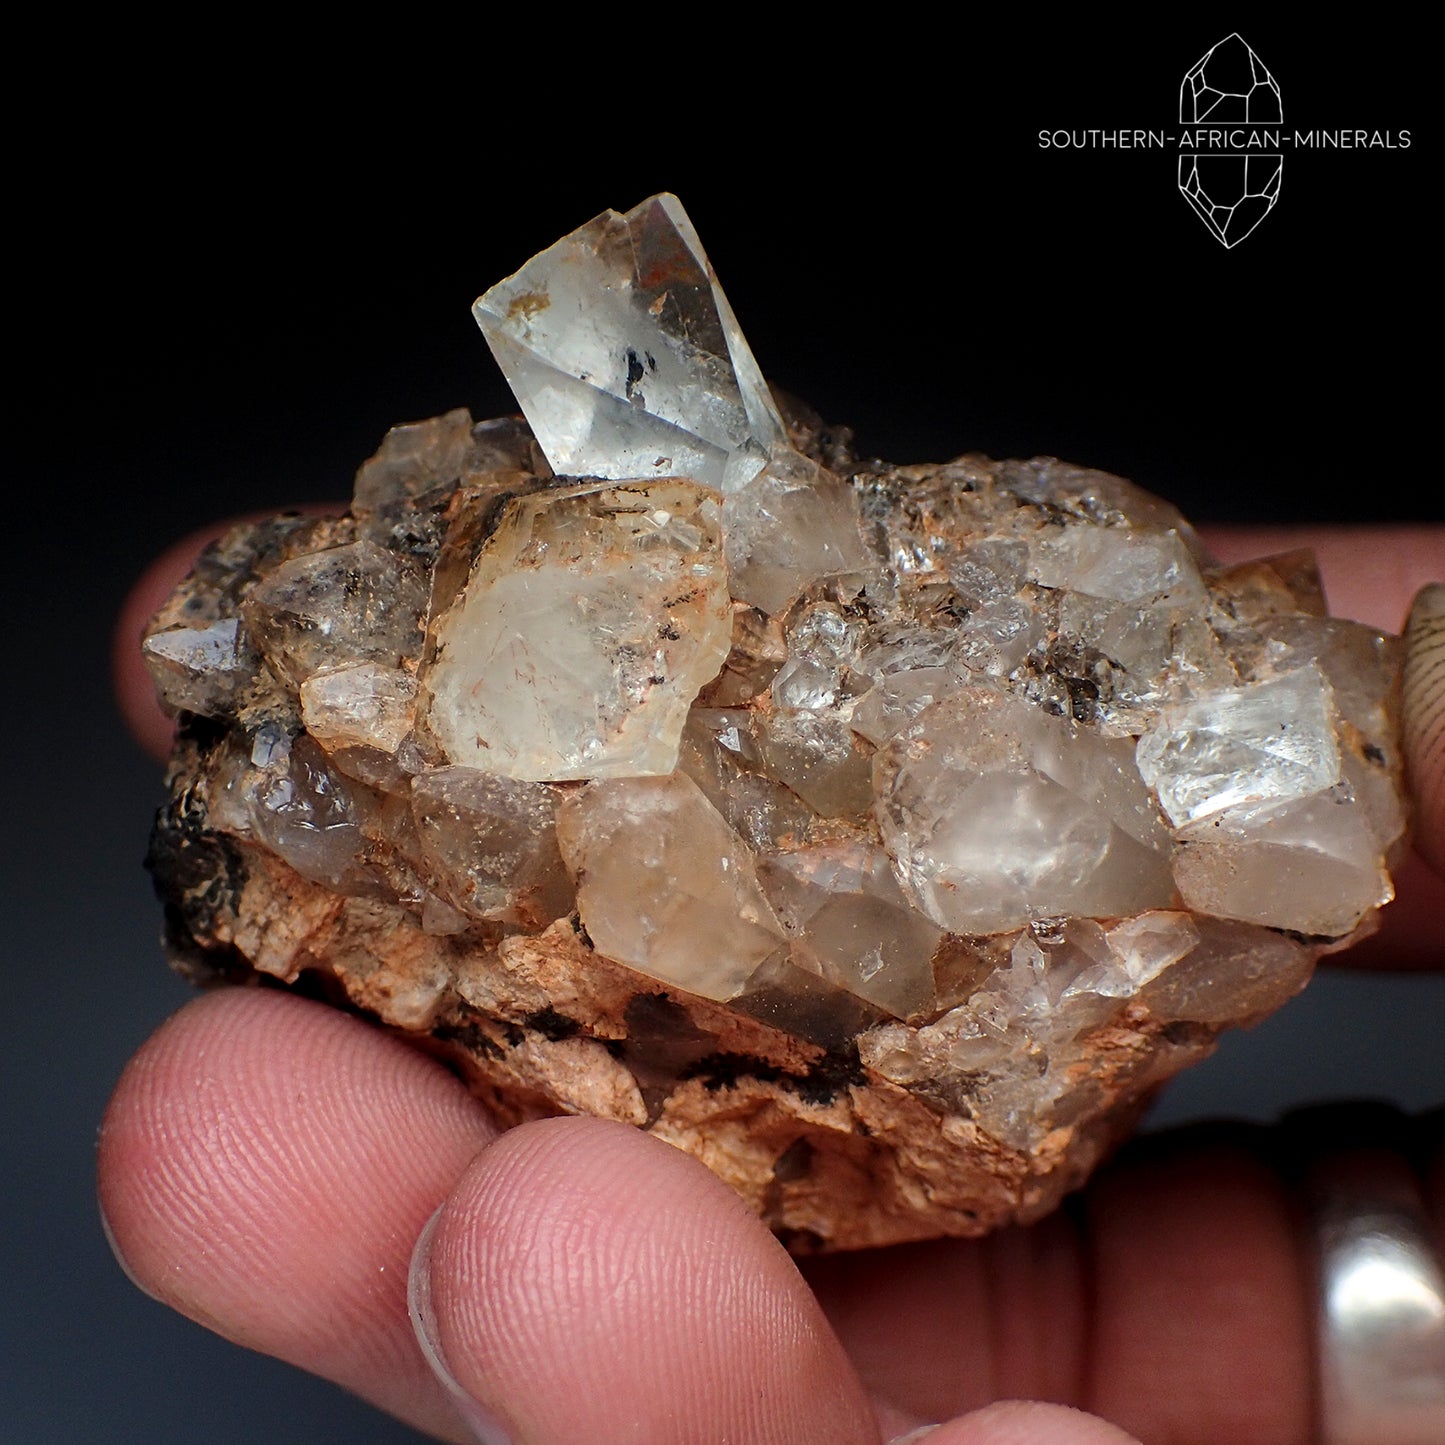 Topaz Crystal on Matrix Specimen, Klein Spitzkoppe, Namibia